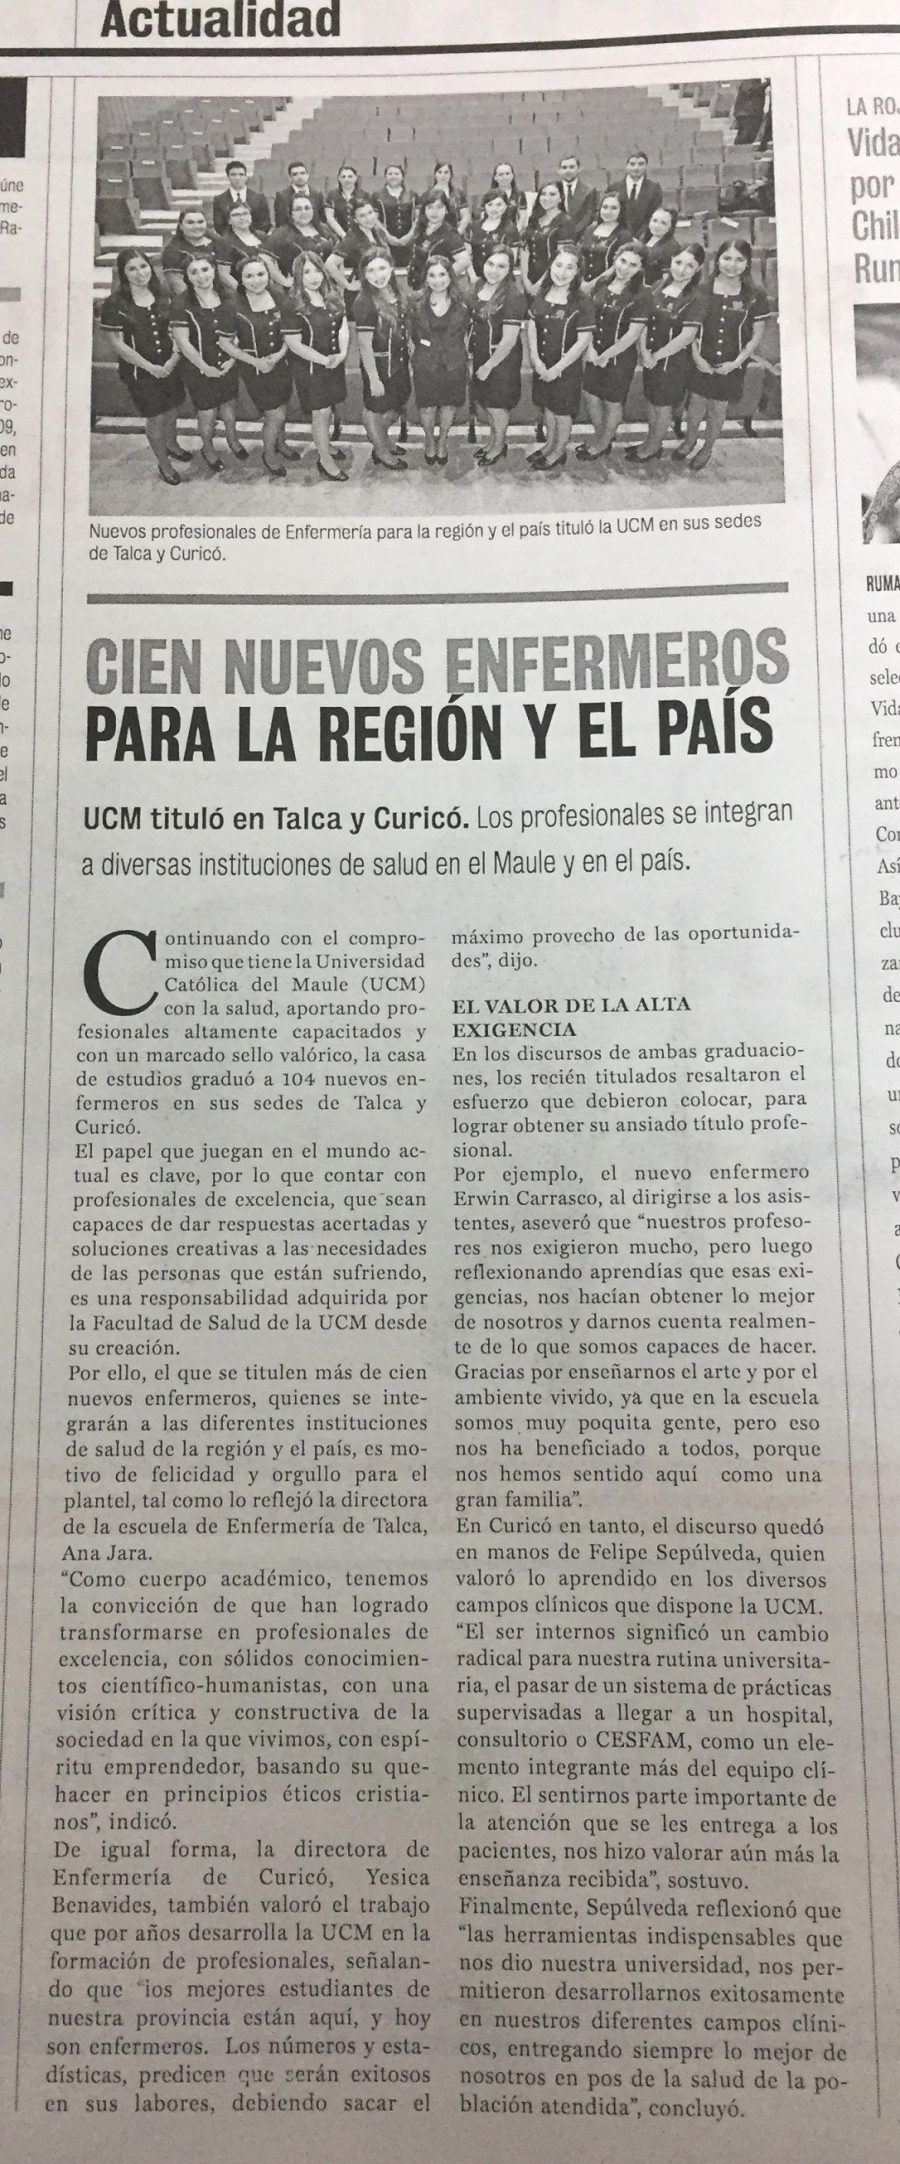 15 de junio en Diario La Prensa: “Cien nuevos enfermeros para la región y el país”